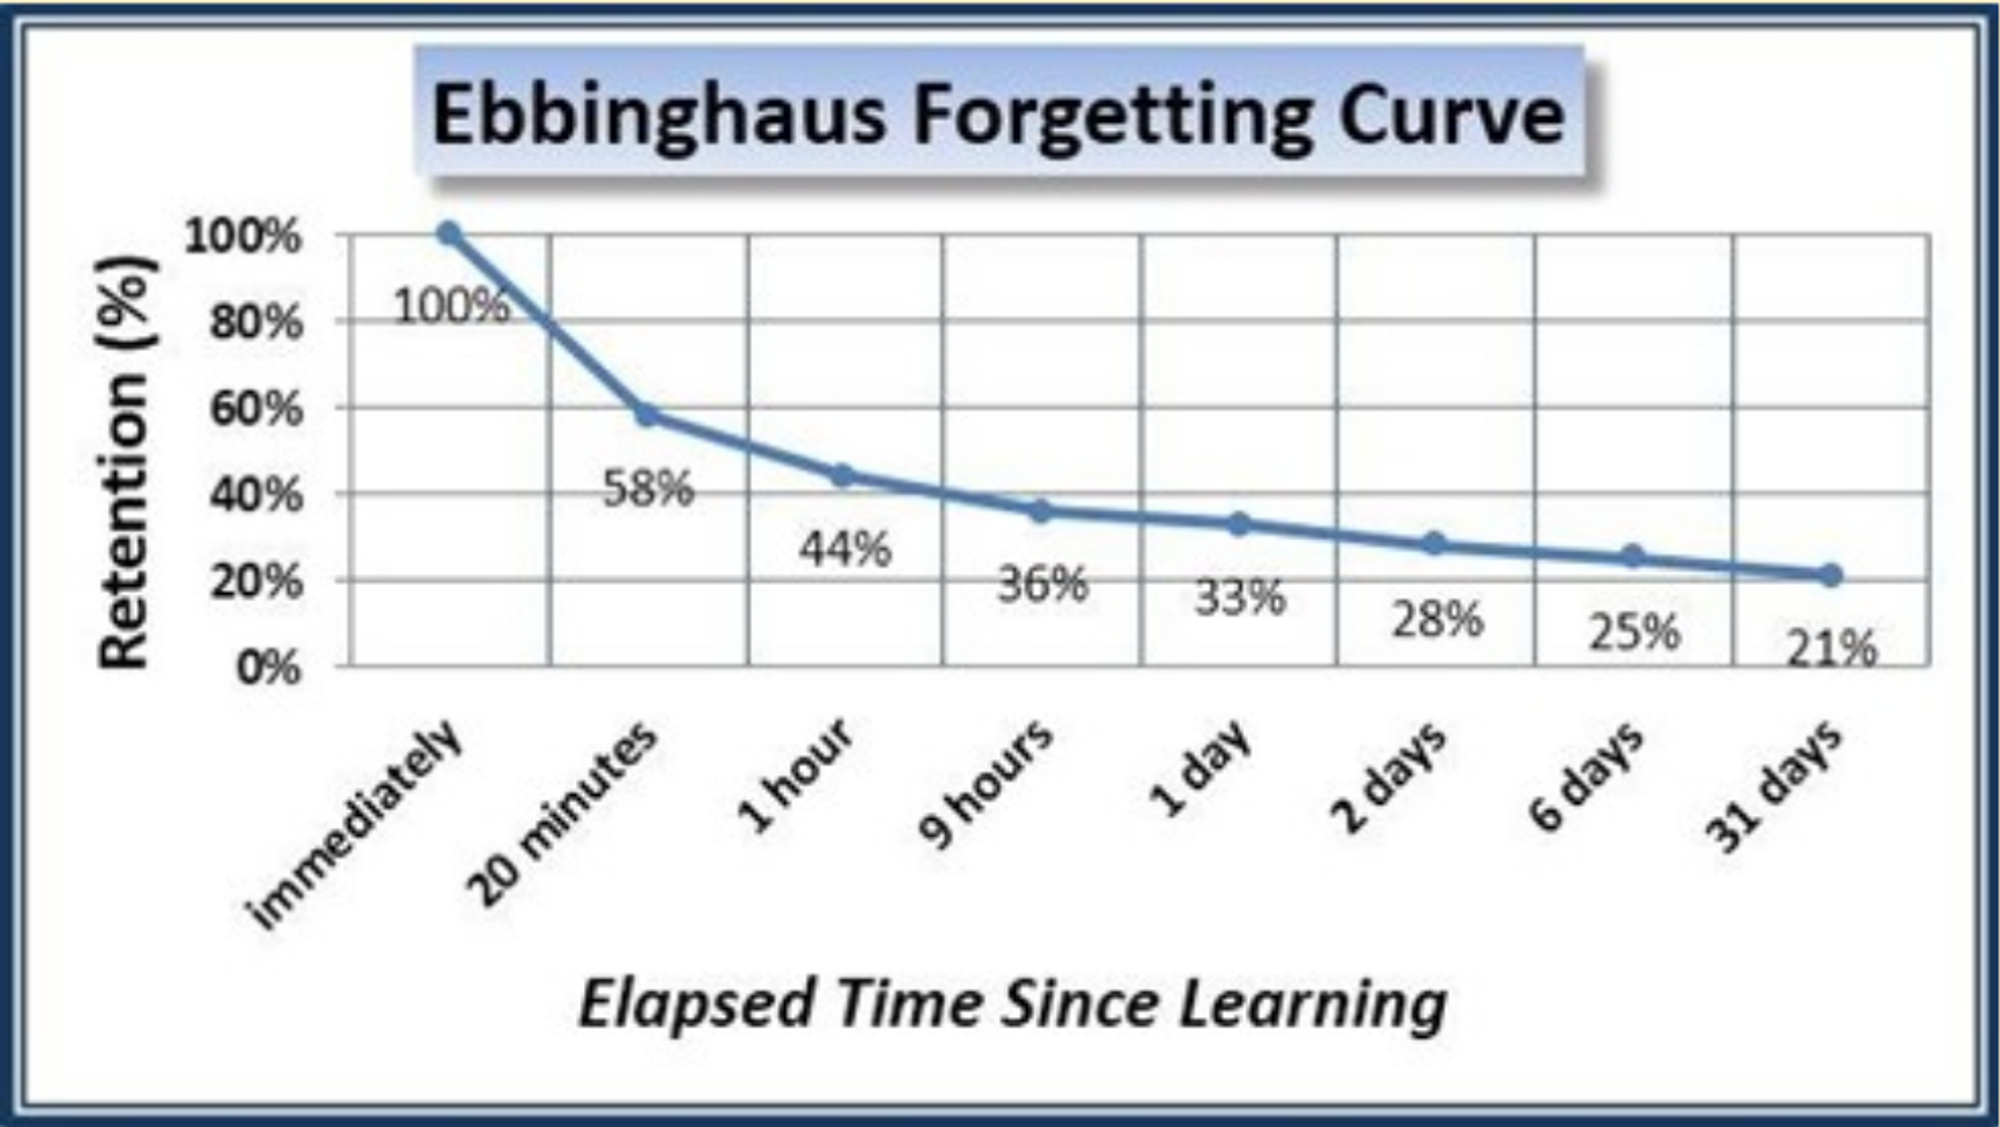 Curva de Ebbinghaus